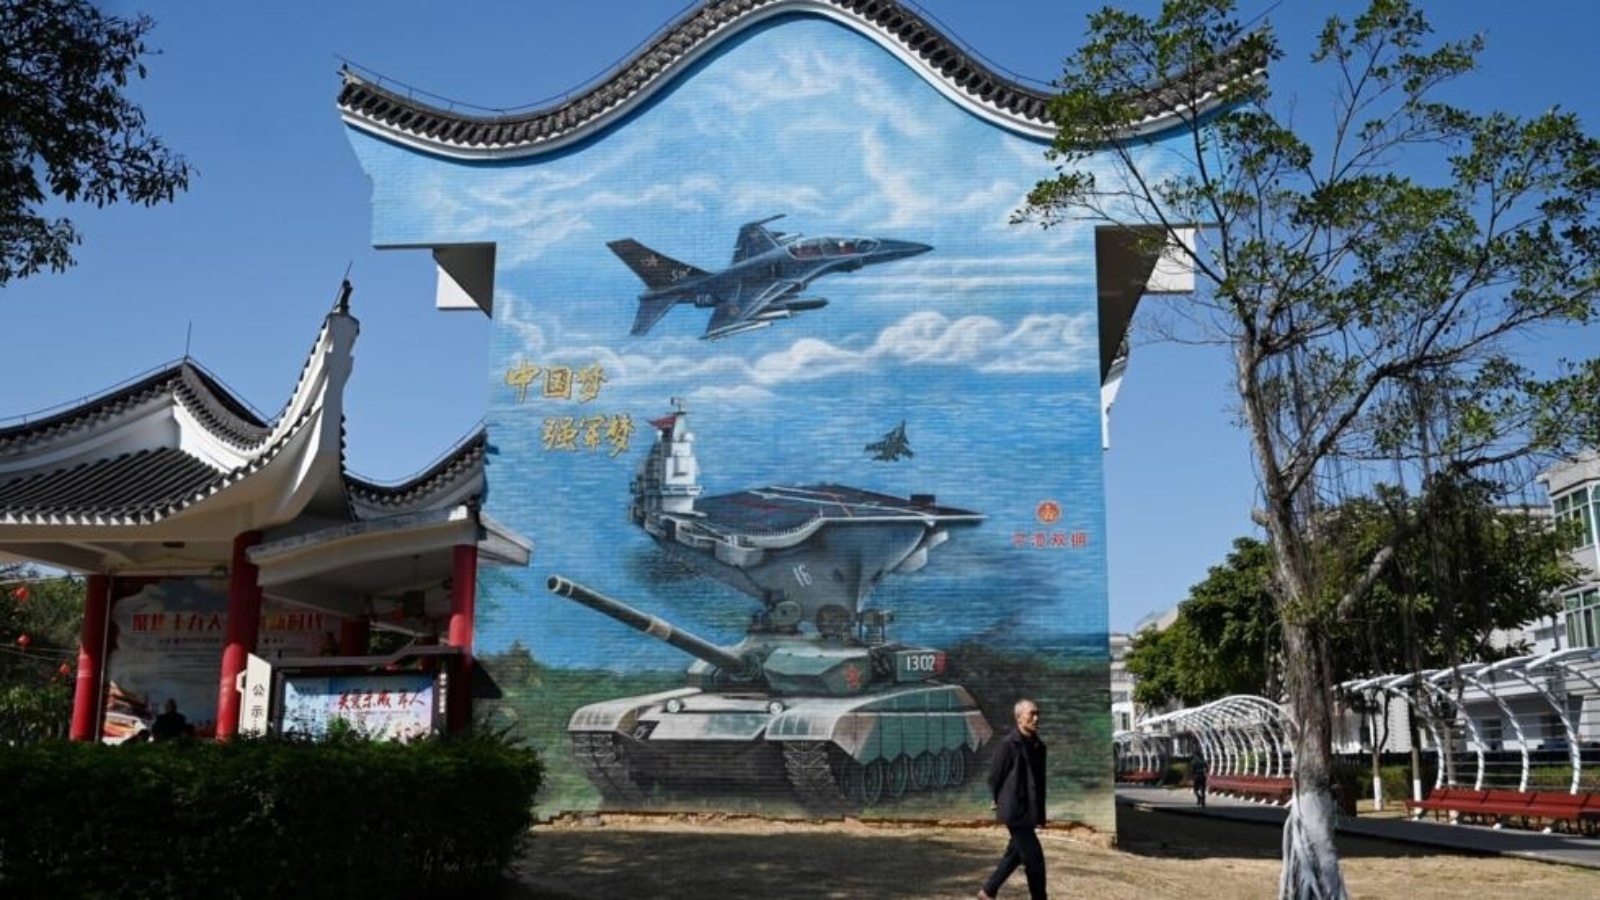 رجل يسير بجوار لوحة جدارية ذات طابع عسكري في حديقة عامة في جزيرة بينغتان، أقرب نقطة في الصين إلى جزيرة تايوان، في مقاطعة فوجيان جنوب شرق الصين في 14 كانون الثاني (يناير) 2024